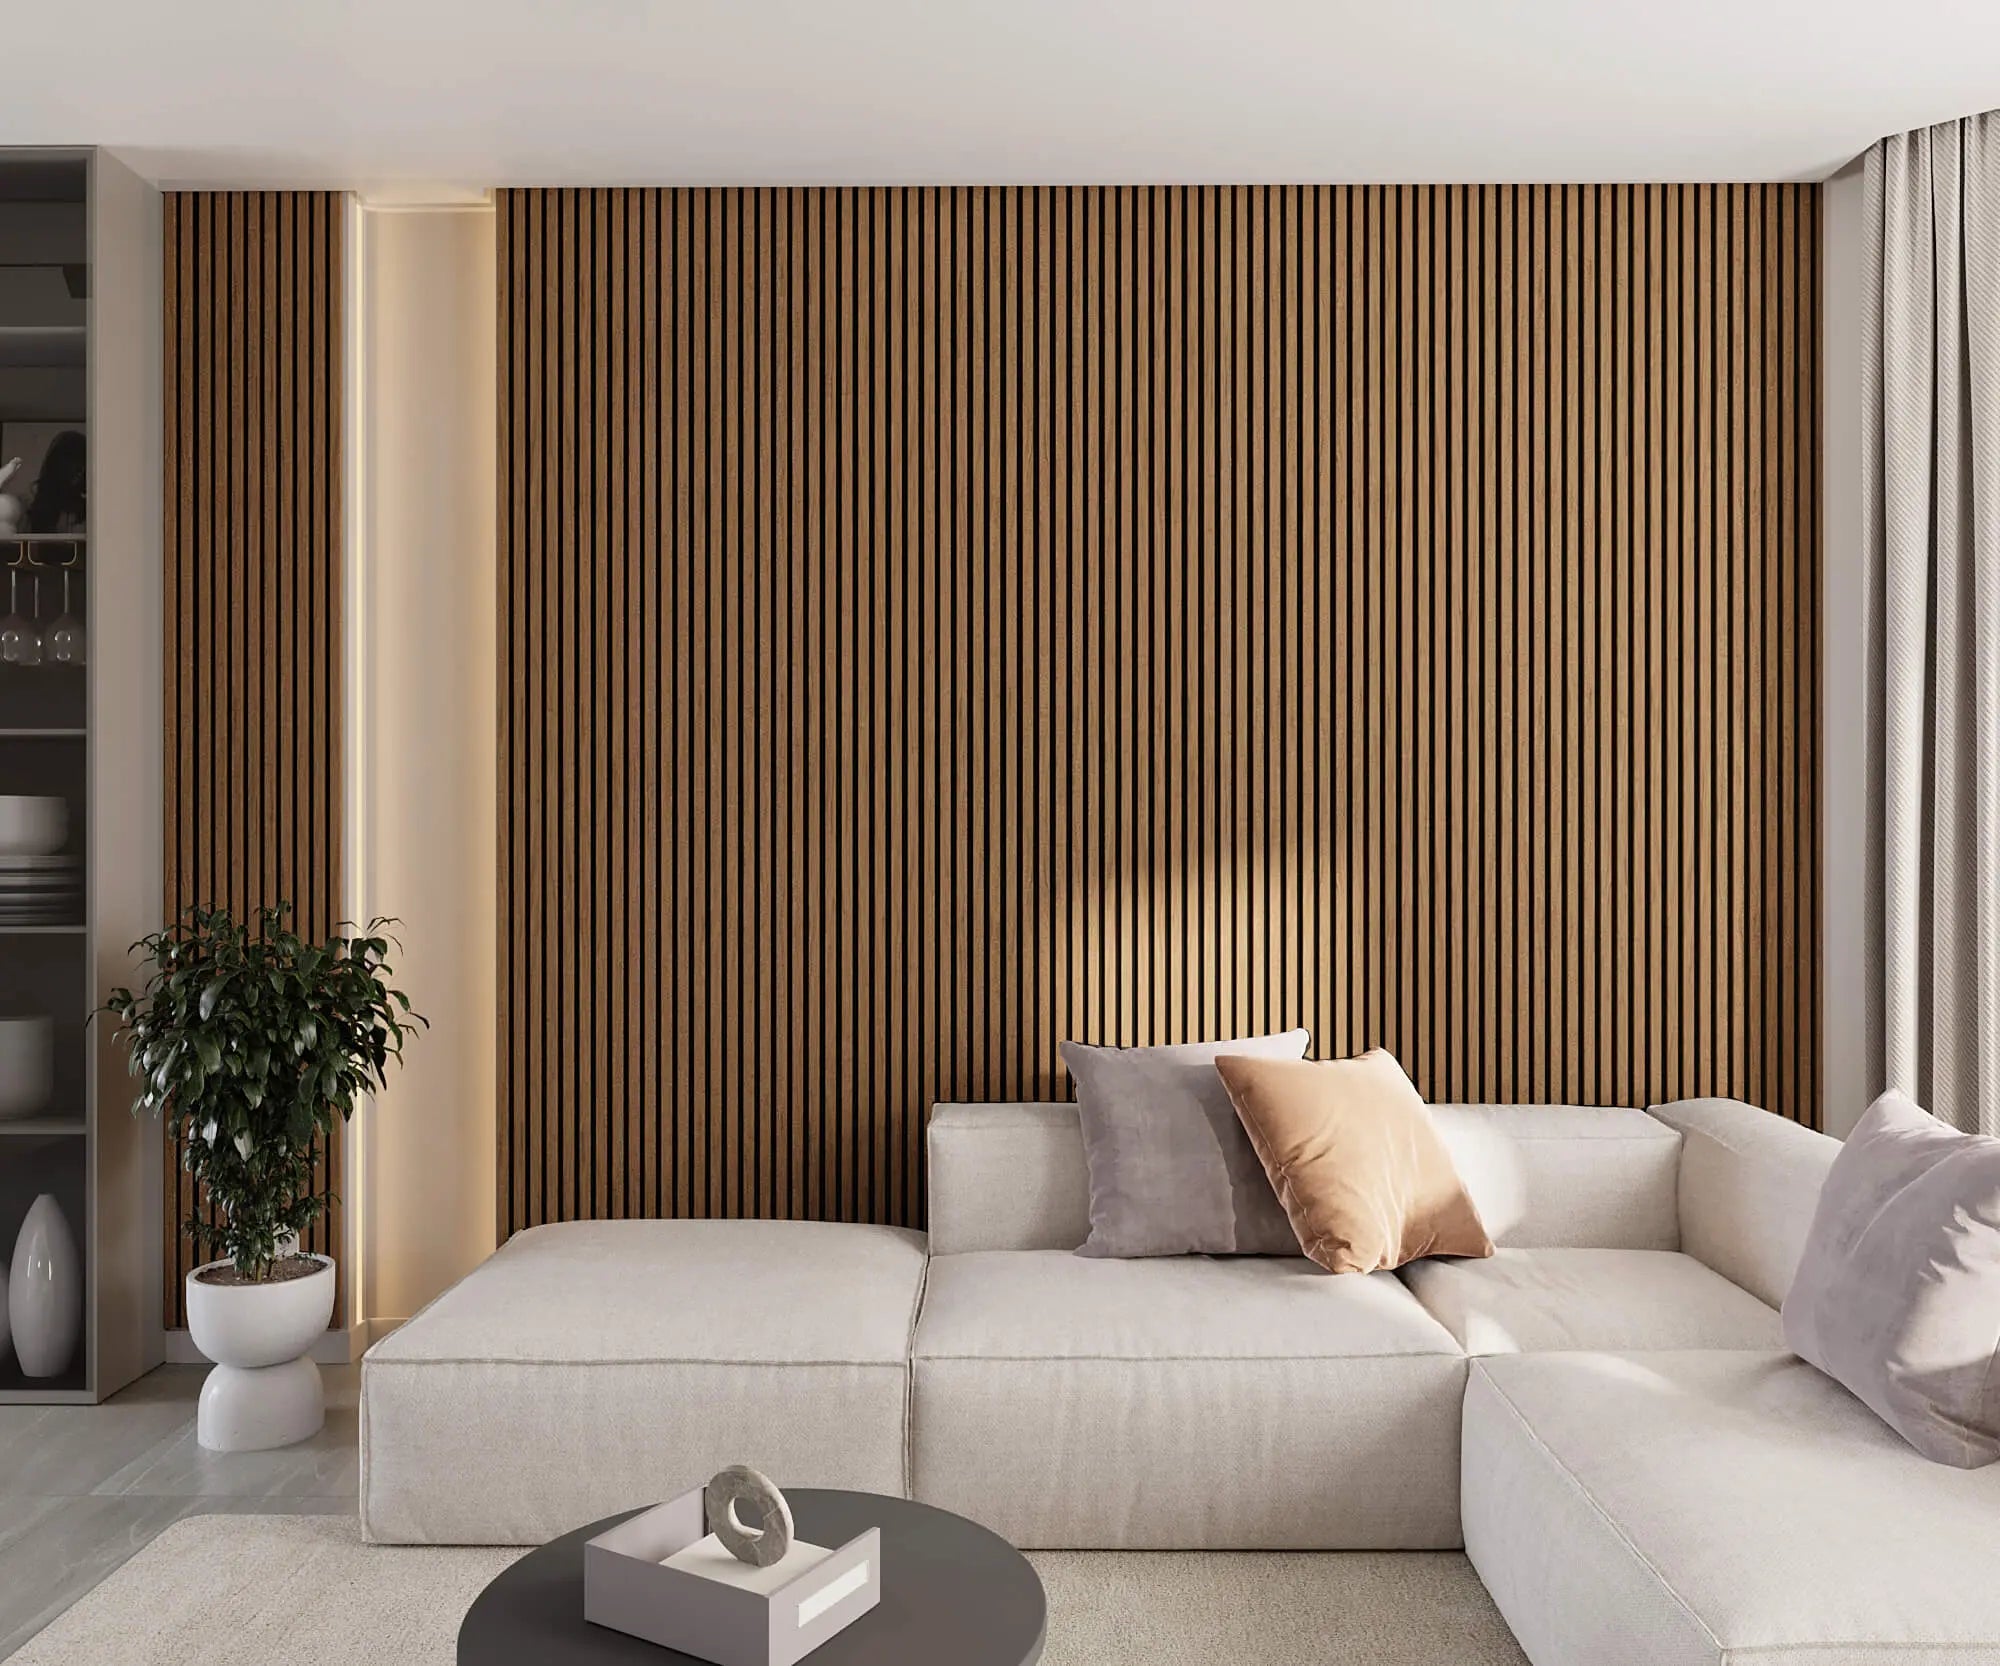 White oak wood slat panels in living room